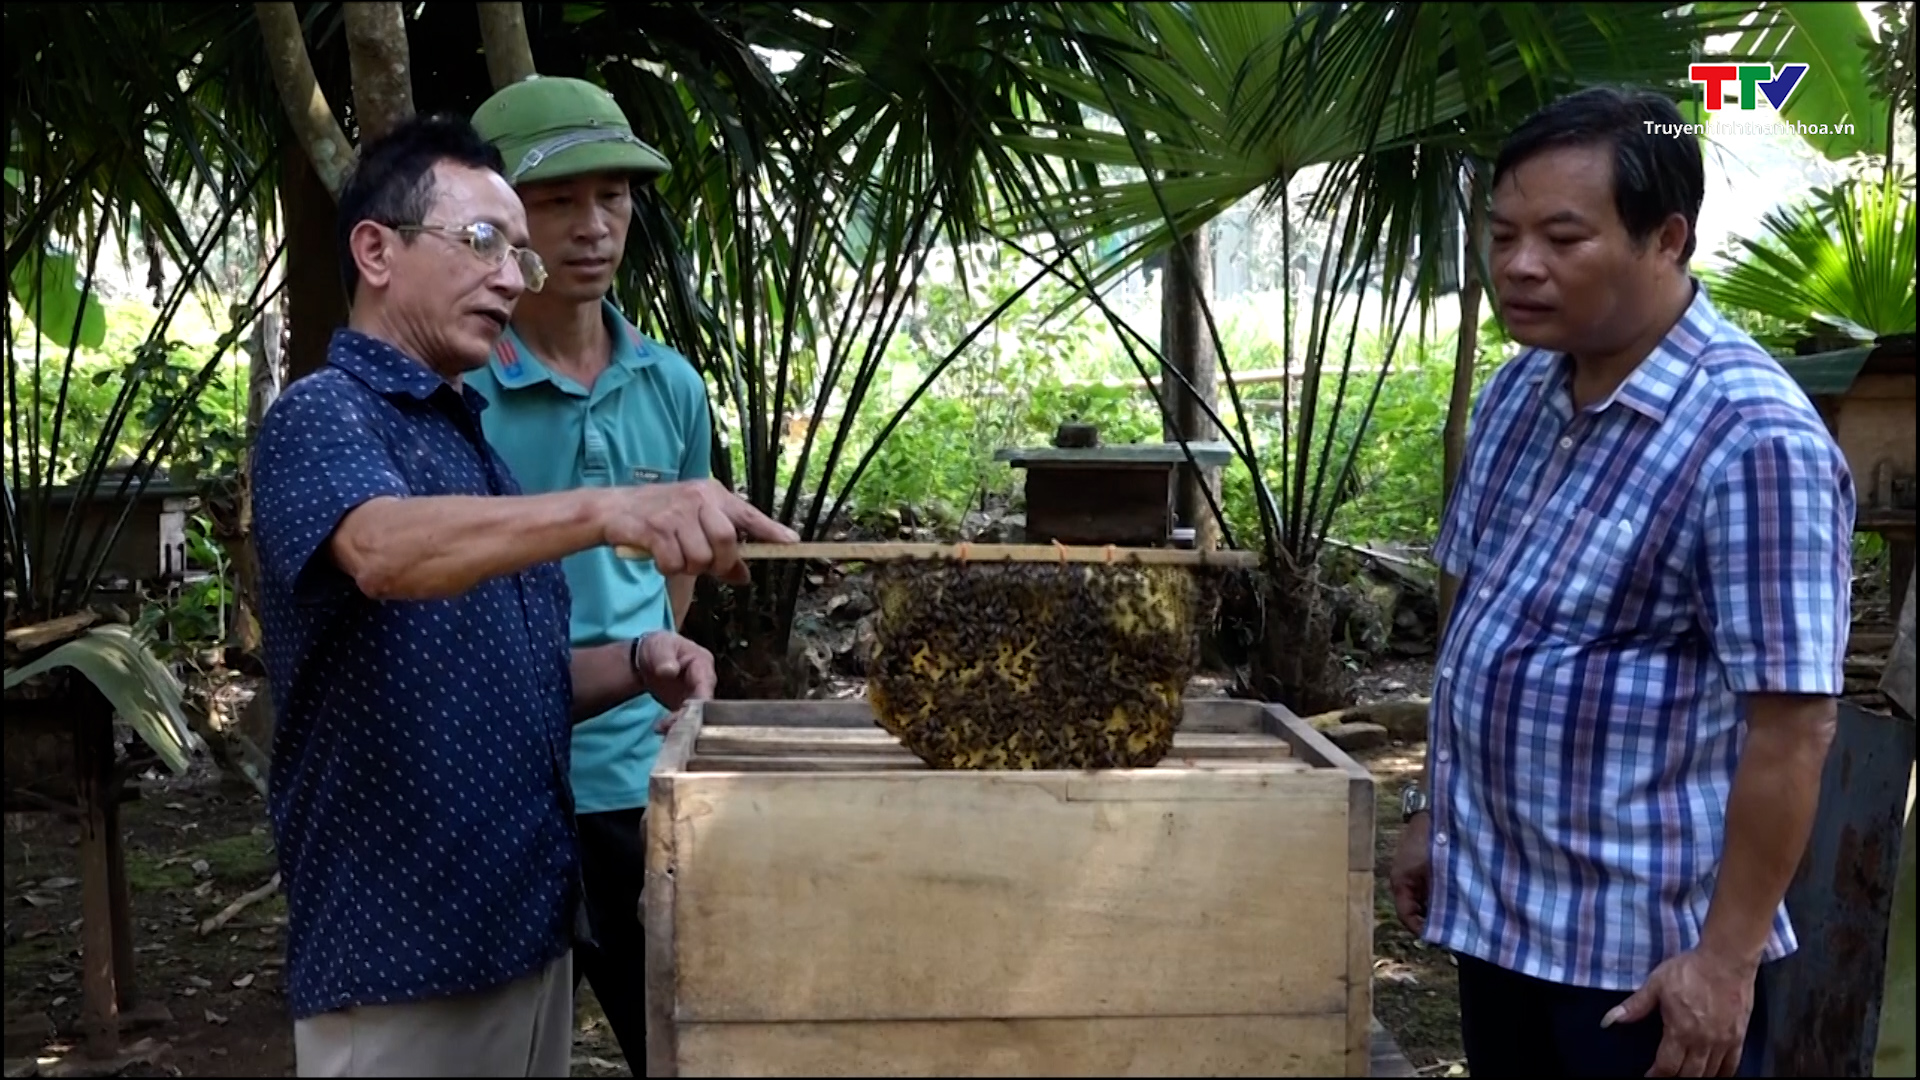 Hiệu quả kinh tế từ nghề nuôi ong lấy mật tại xã Xuân Bình - Ảnh 2.